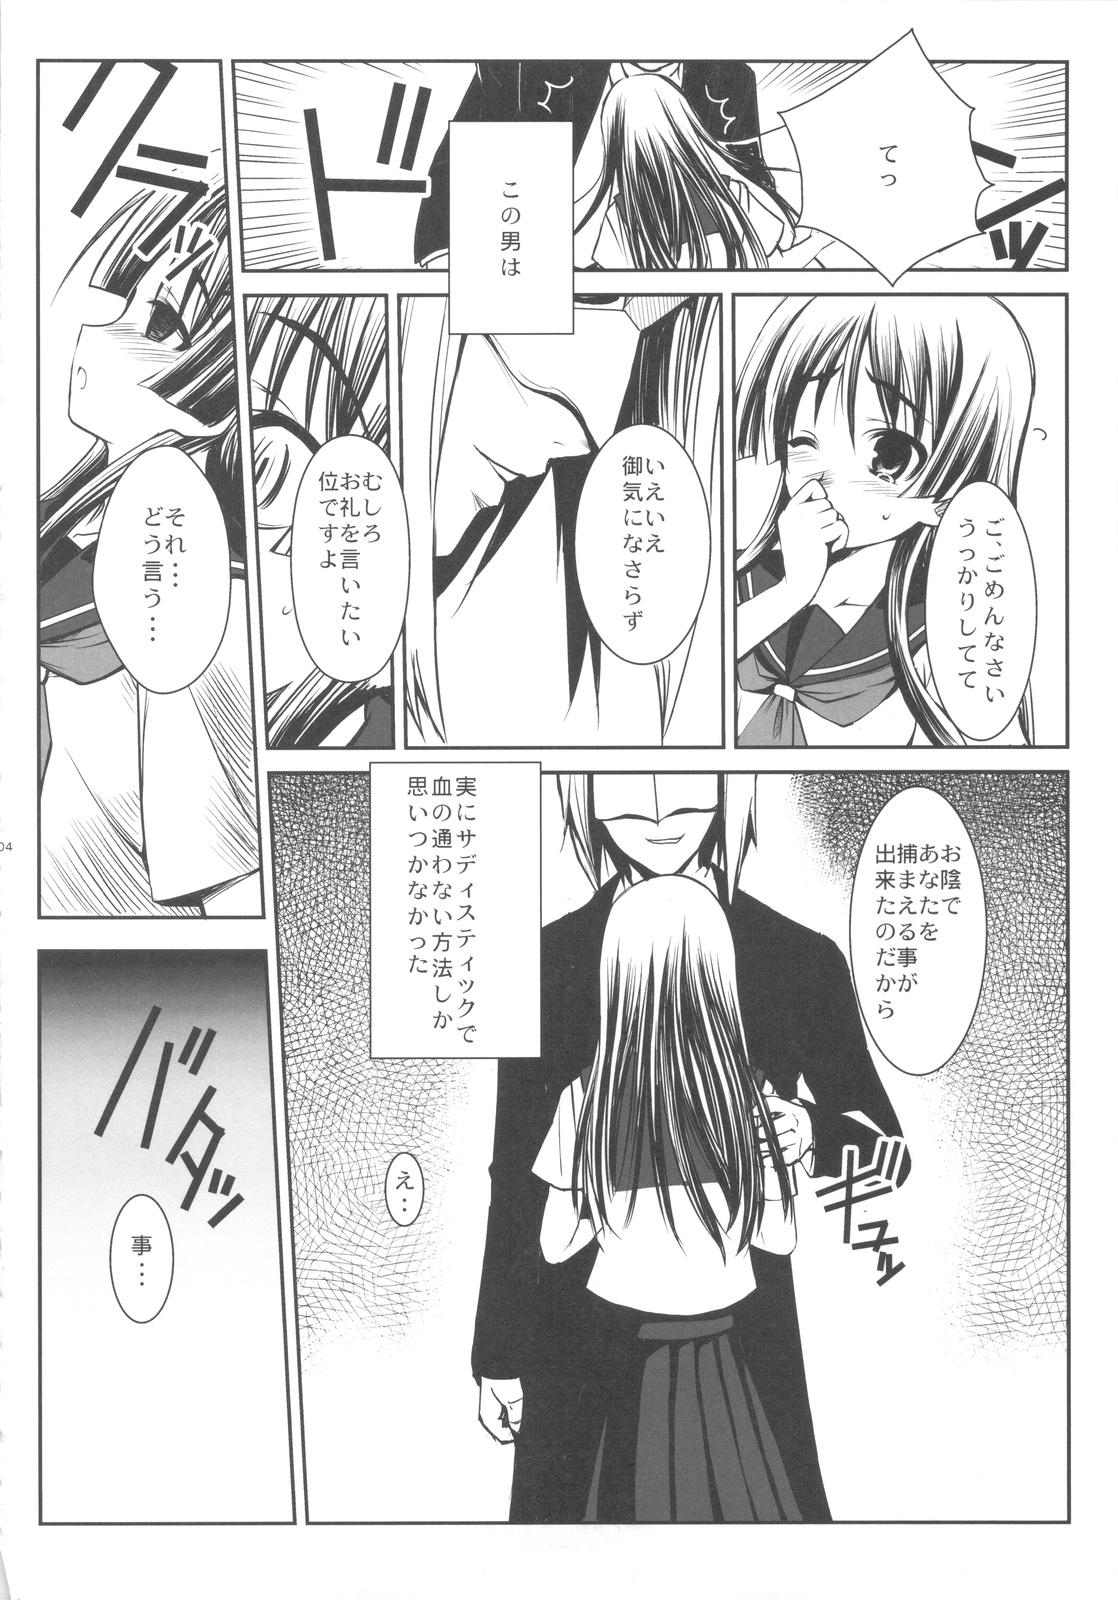 Classroom ERECTLIC THUNDER - Toaru kagaku no railgun Hardcoresex - Page 4